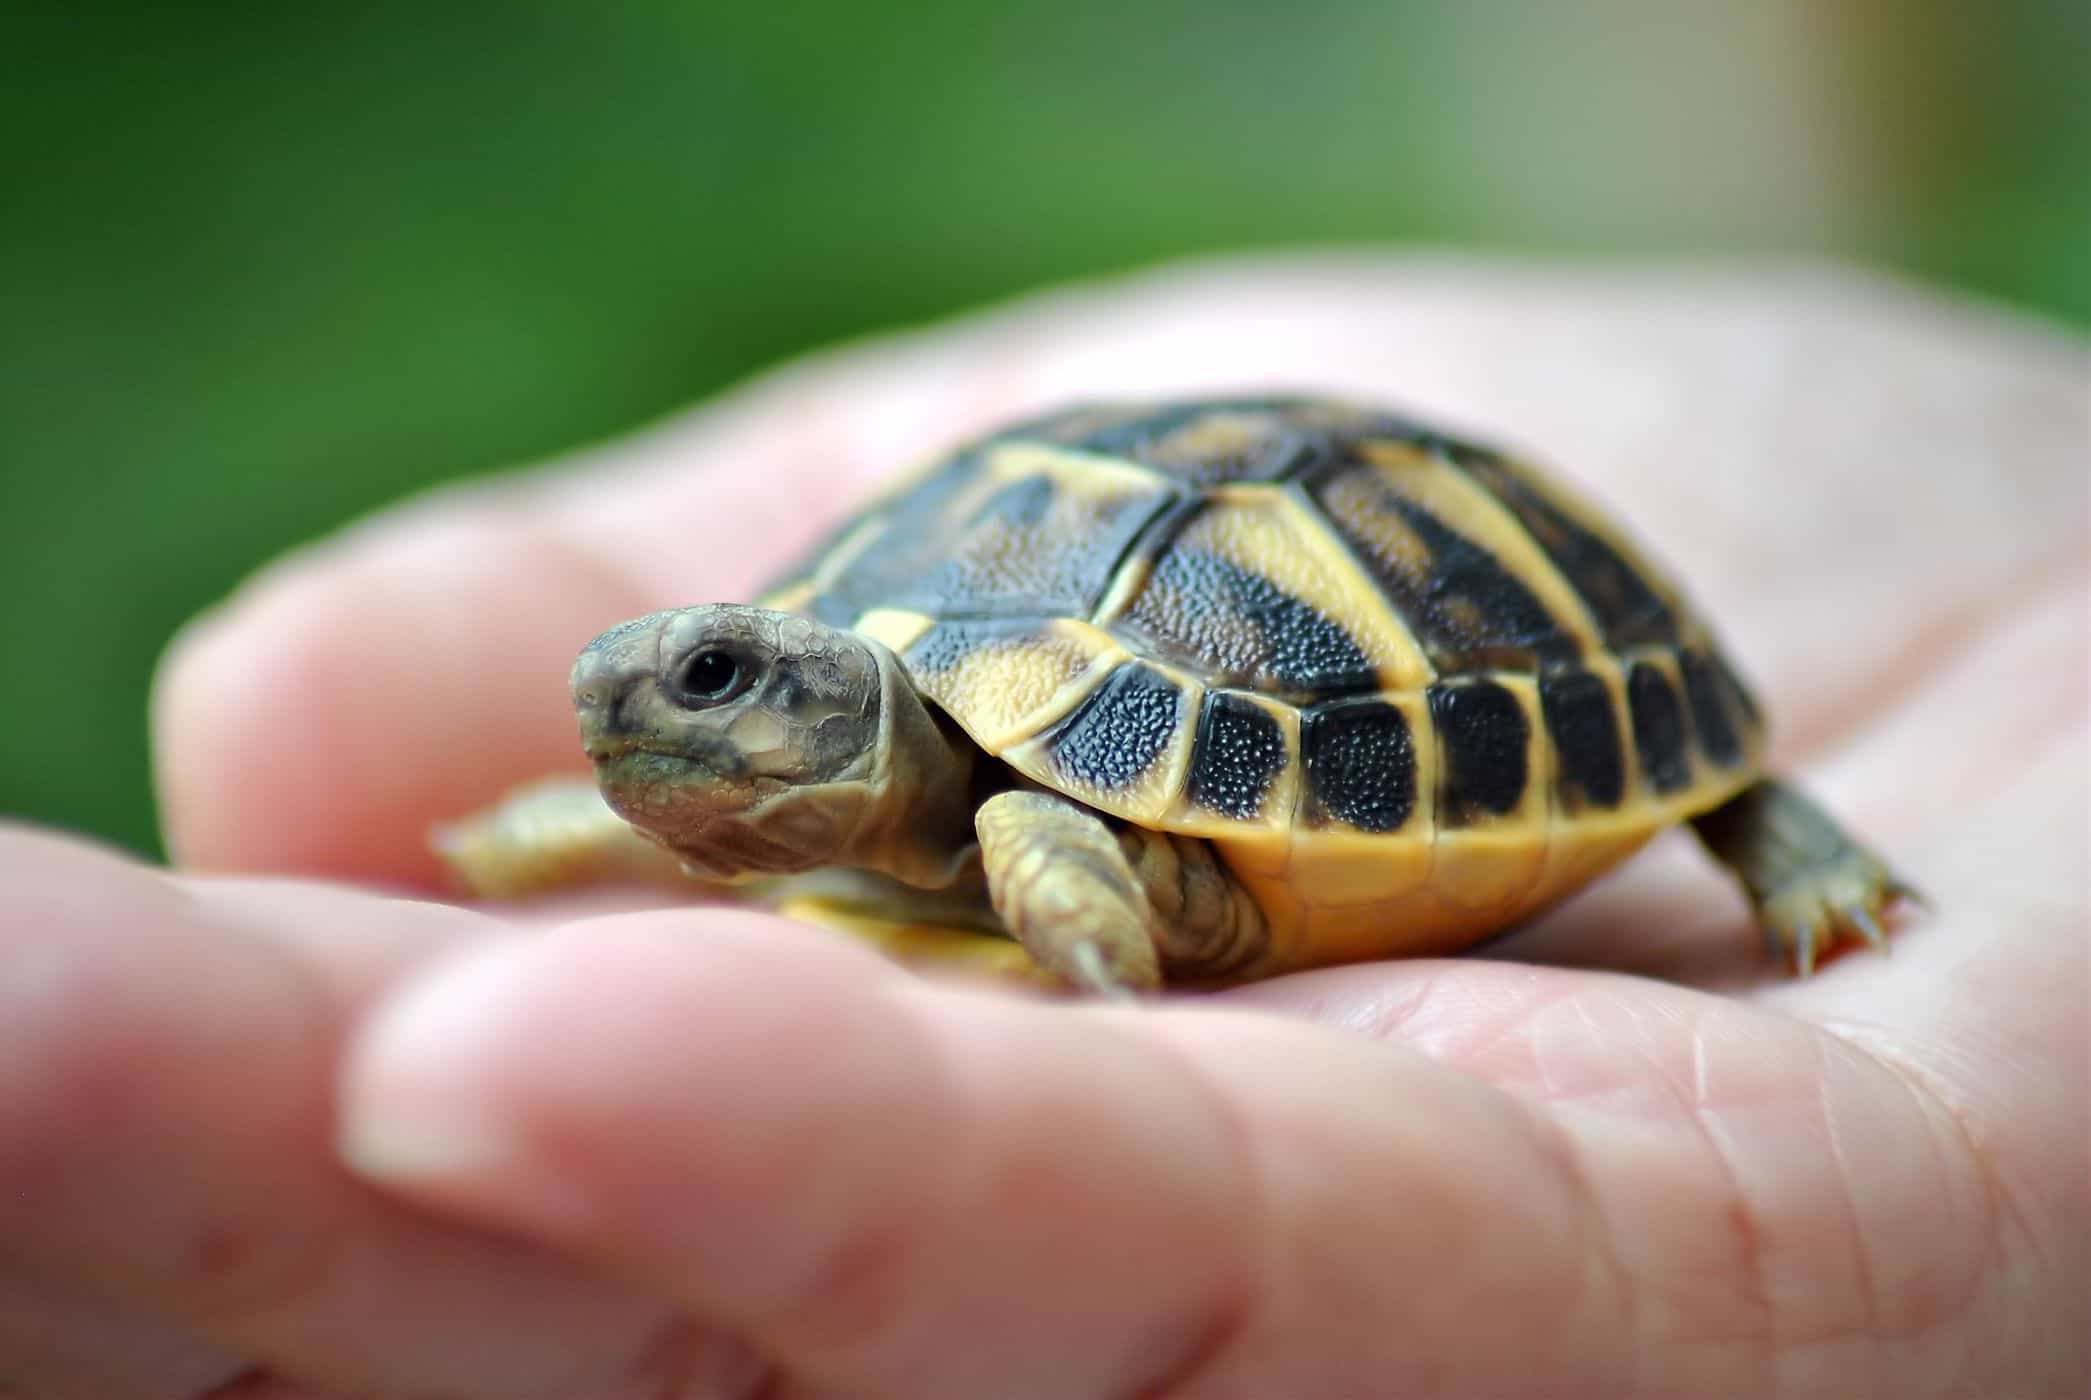 utrzymywanie żółwi zwiększa ryzyko zakażenia salmonellą